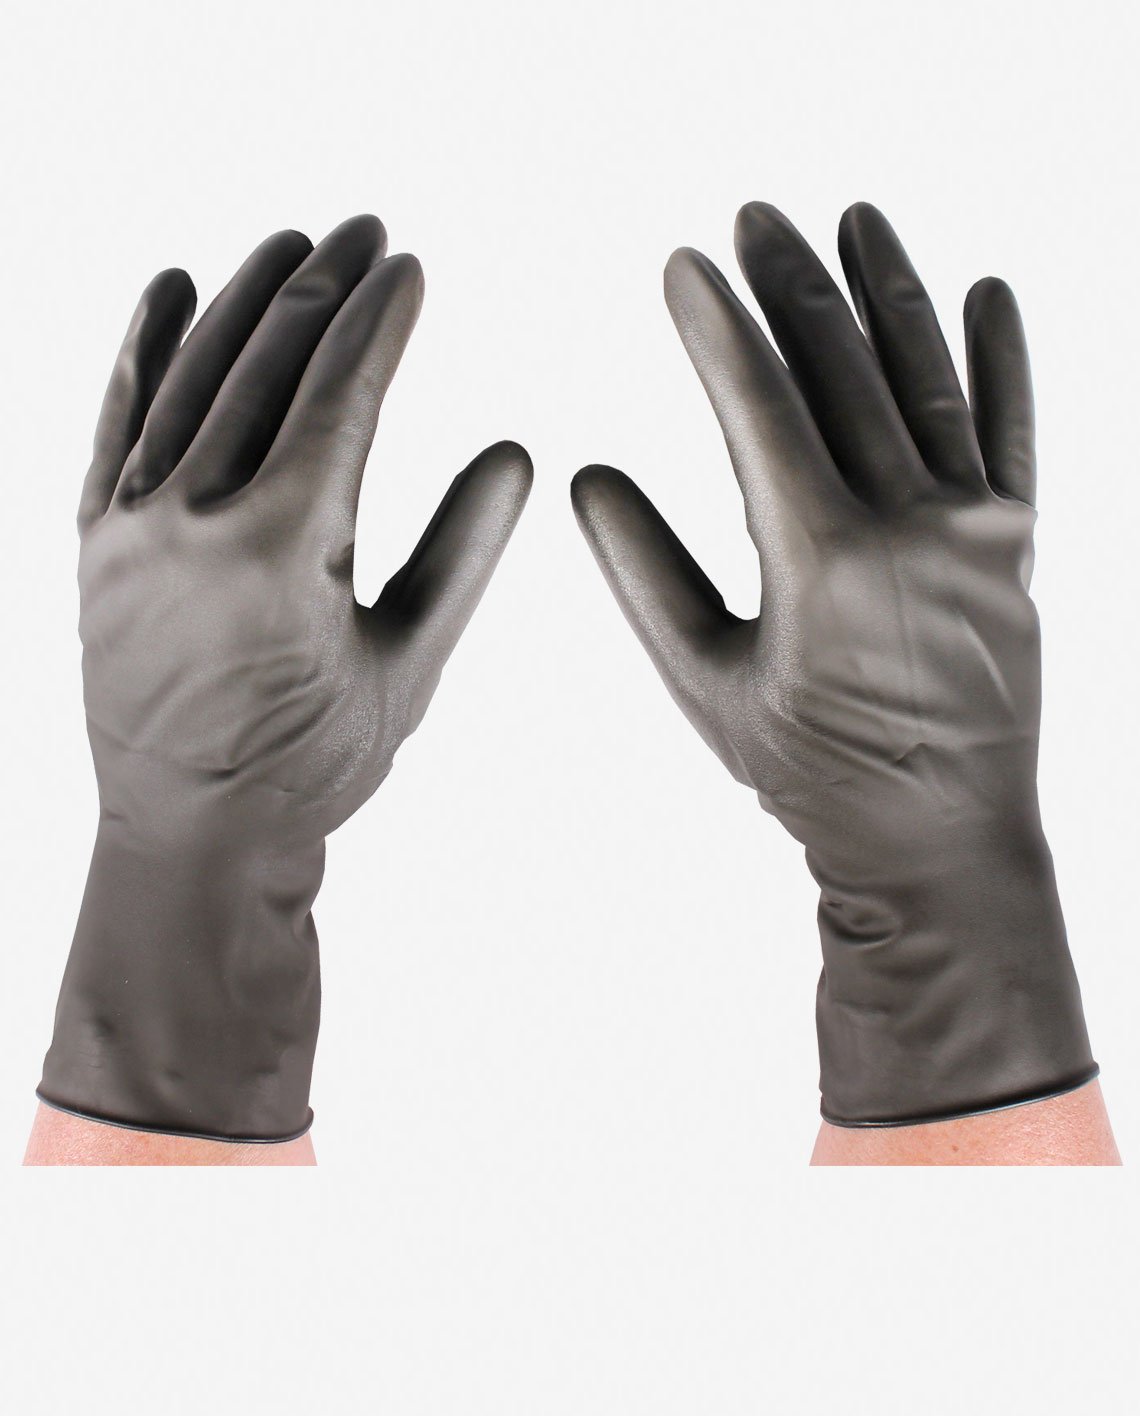 Revolution Radiation Reduction Gloves – MavenImaging